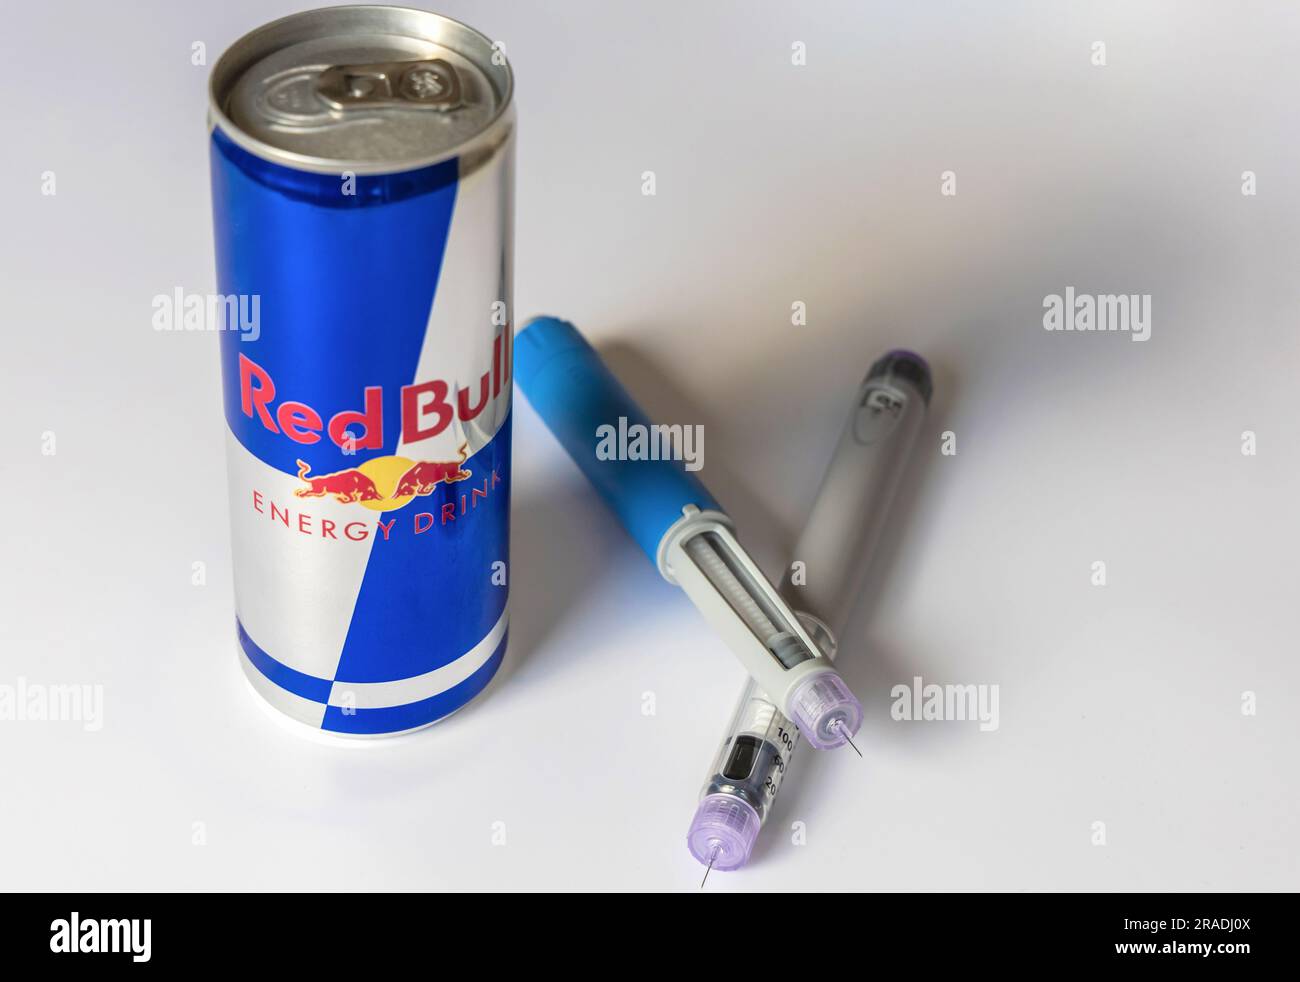 Stylo d'injection d'insuline ou stylo cartouche d'insuline pour diabétiques  et boisson énergétique Red Bull. Matériel médical pour les parients  diabétiques Photo Stock - Alamy